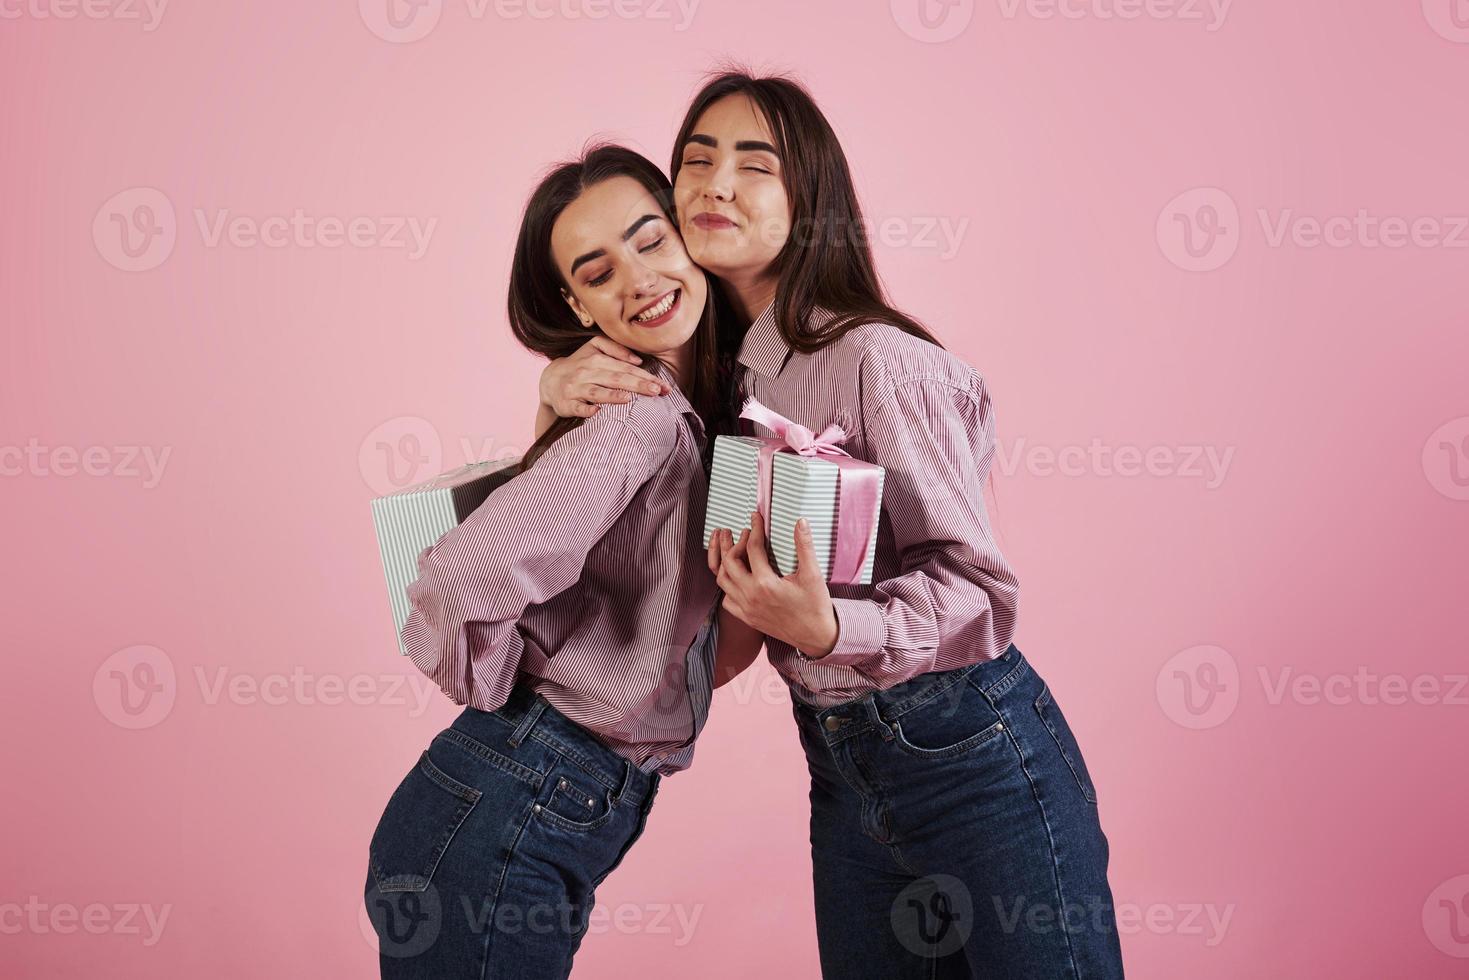 celebrando juntos. mulheres jovens se divertindo no estúdio com fundo rosa. gêmeos adoráveis foto